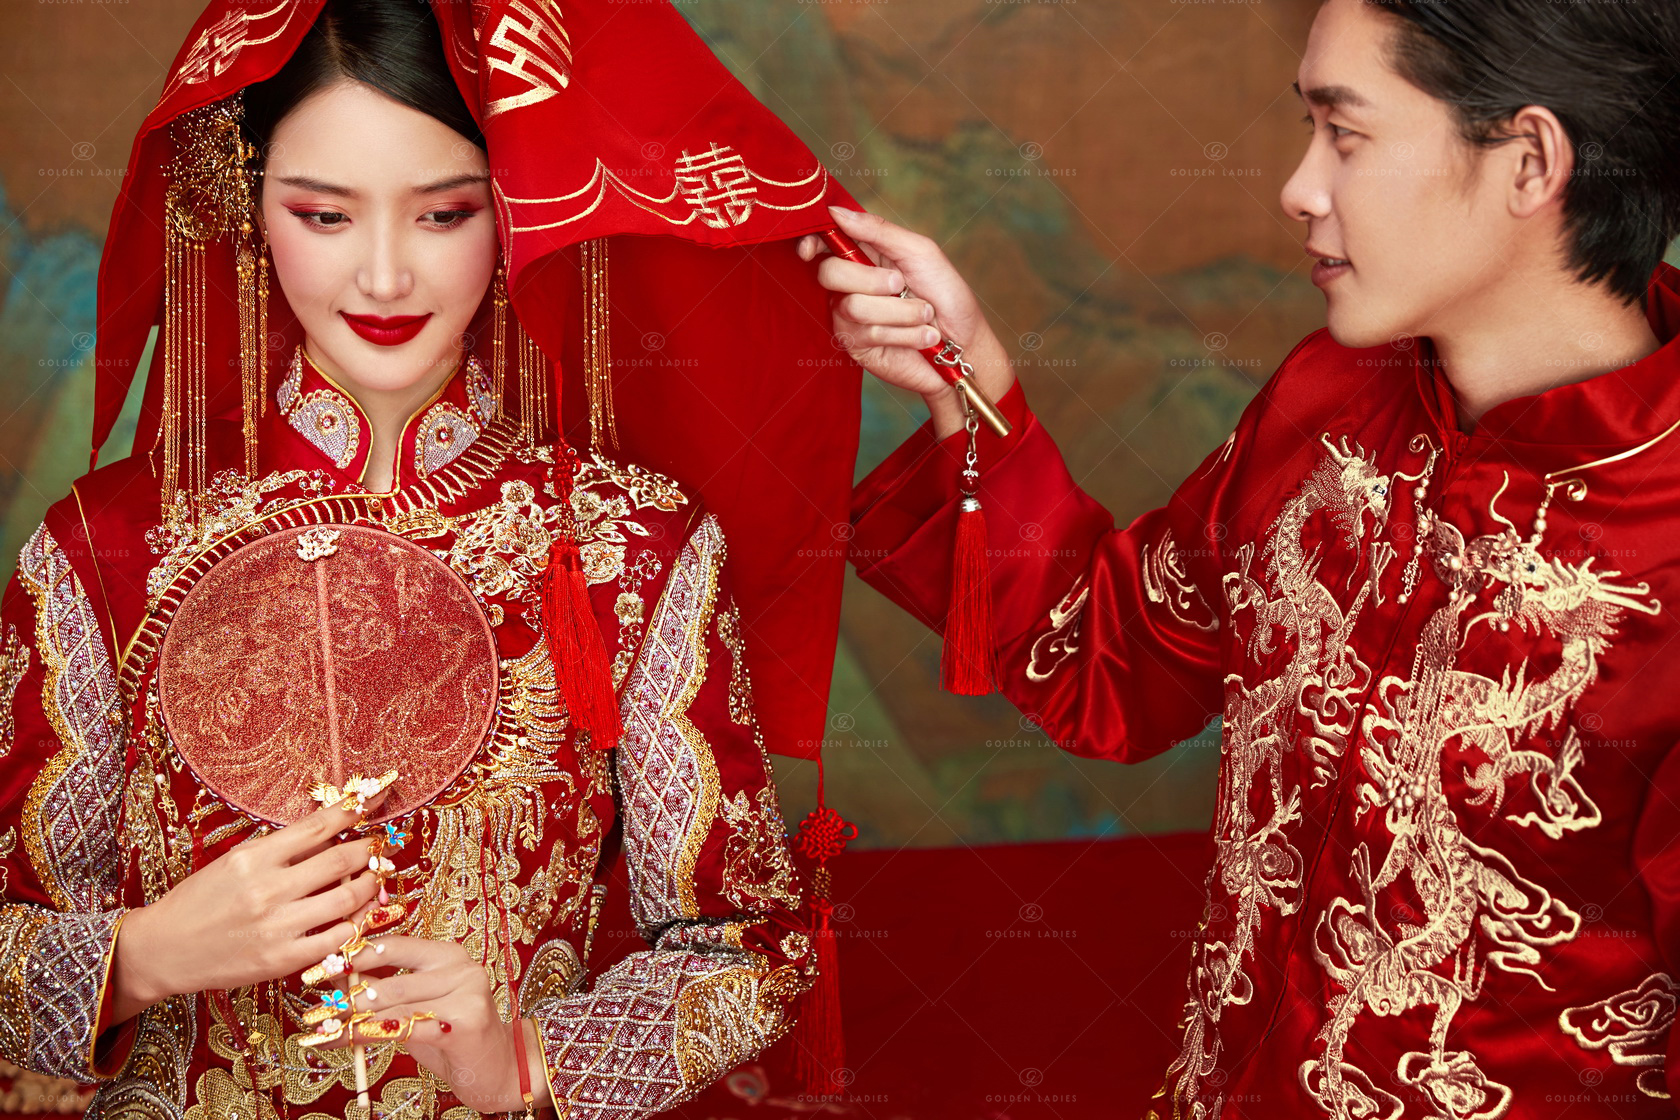 中式传统婚纱_中式婚纱